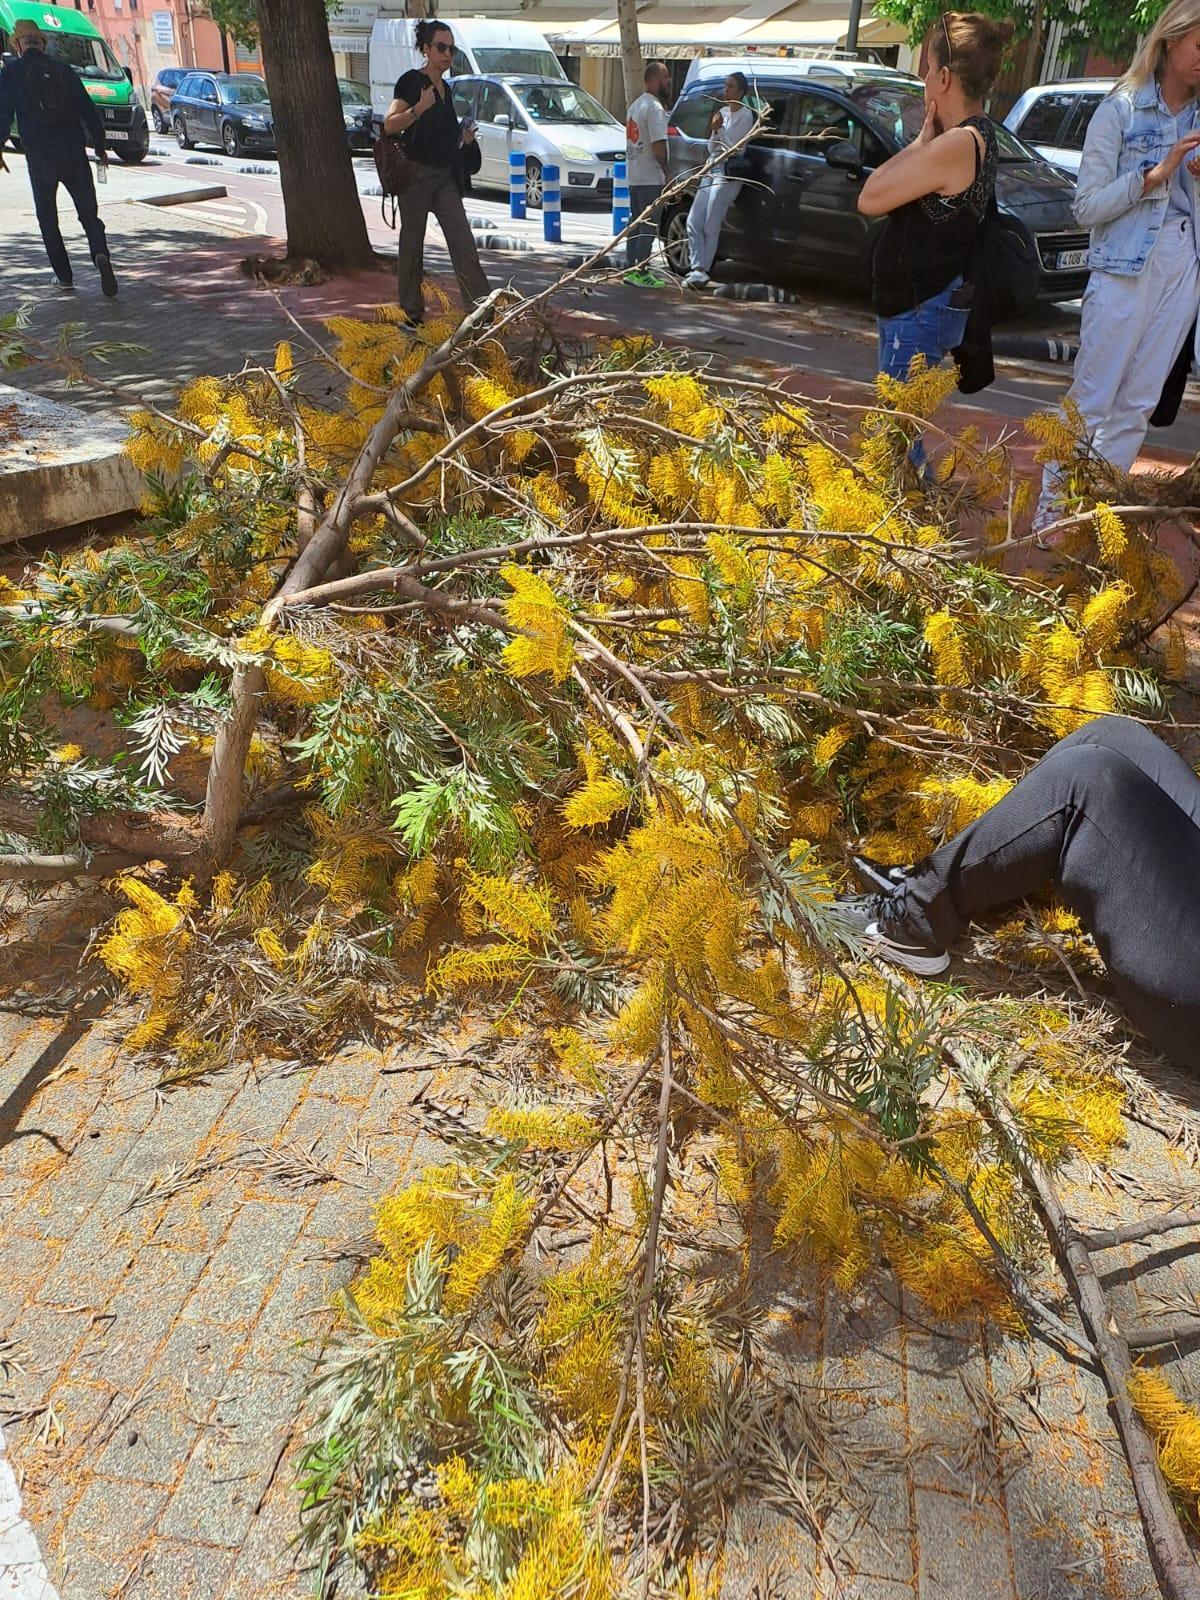 La rama ha golpeado de lleno a la mujer, en una imagen tomada instantes después del accidente, antes de la llegada de los servcios de emergencias